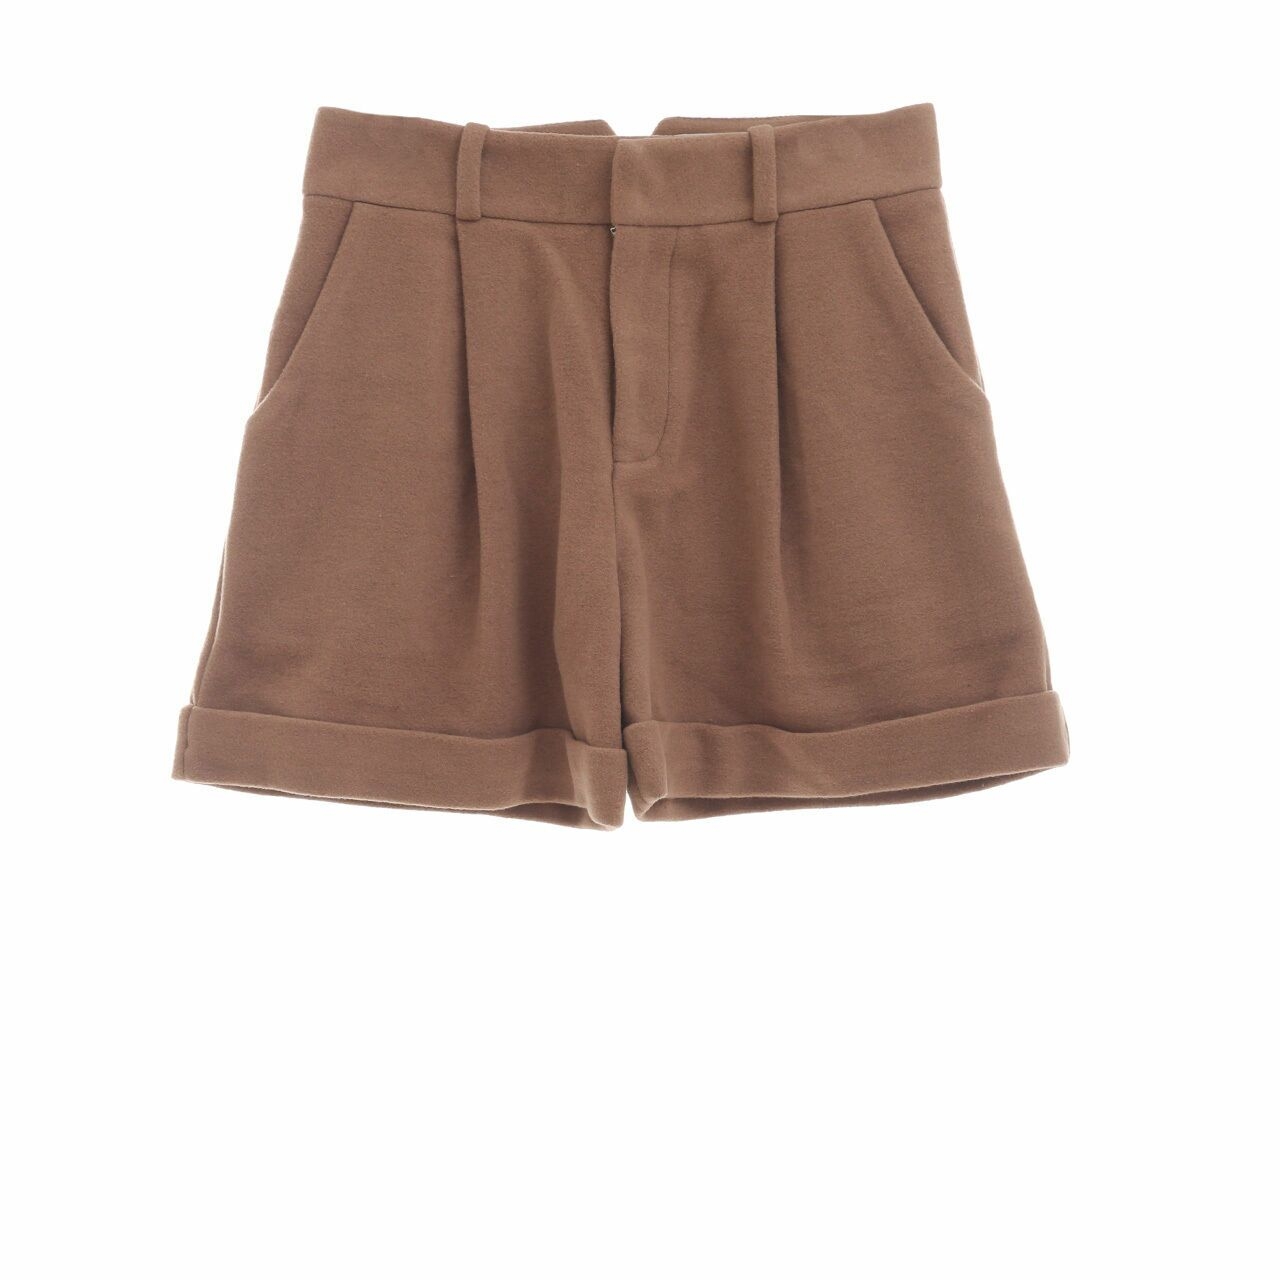 Argyle Oxford Brown Short Pants